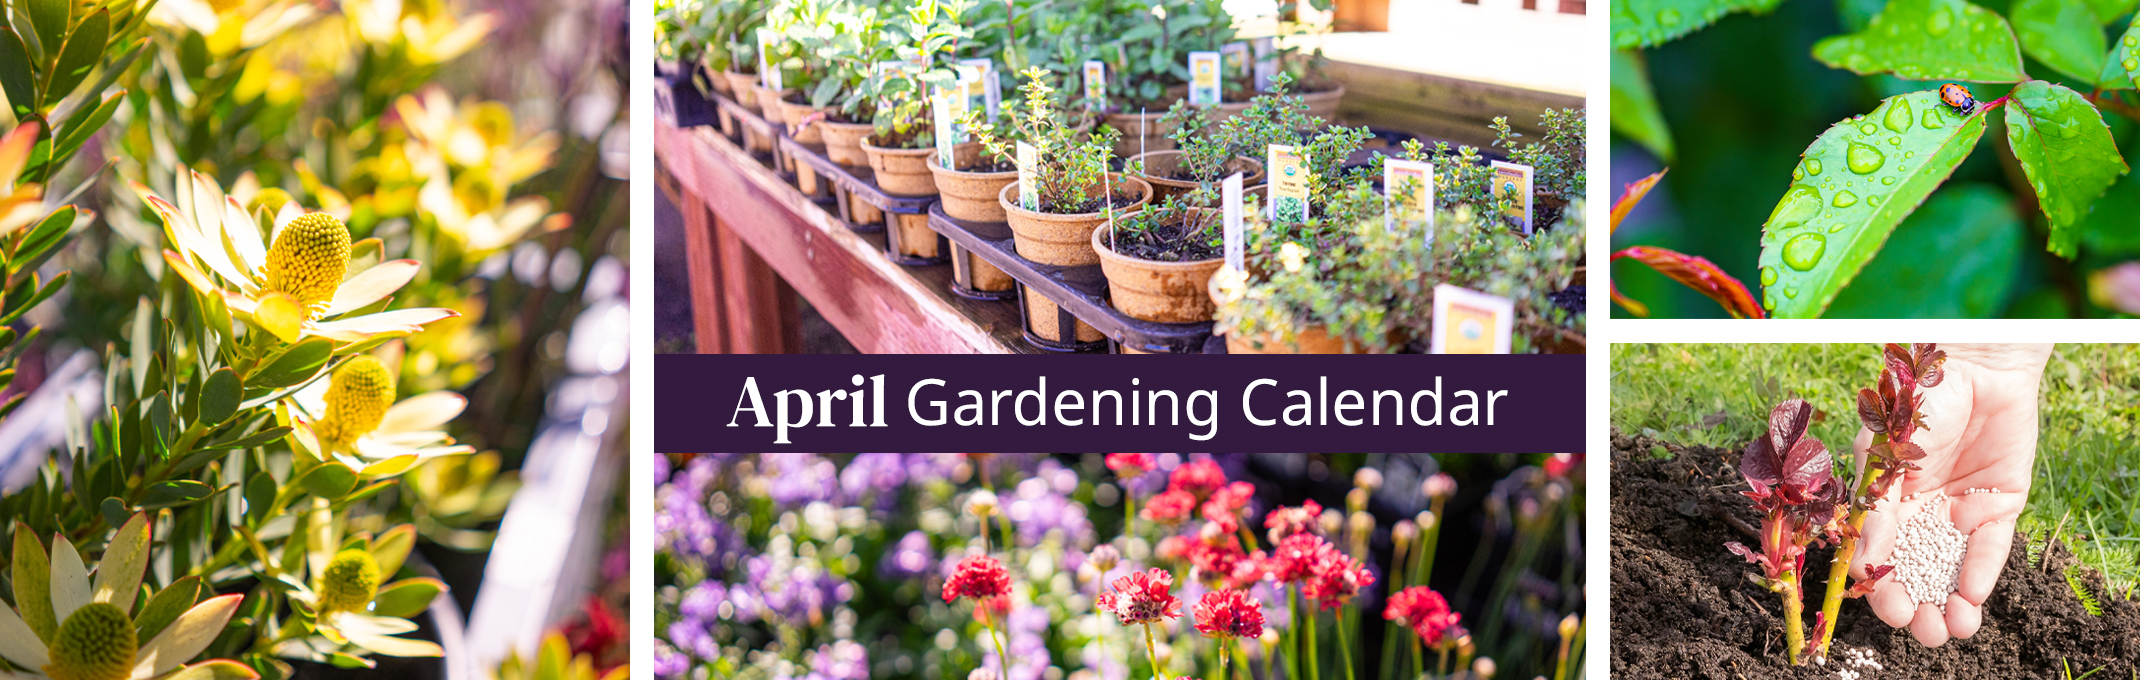 april gardening calendar protea shrub, herbs, perennials, ladybug on healthy leaf and fertiliing shrub